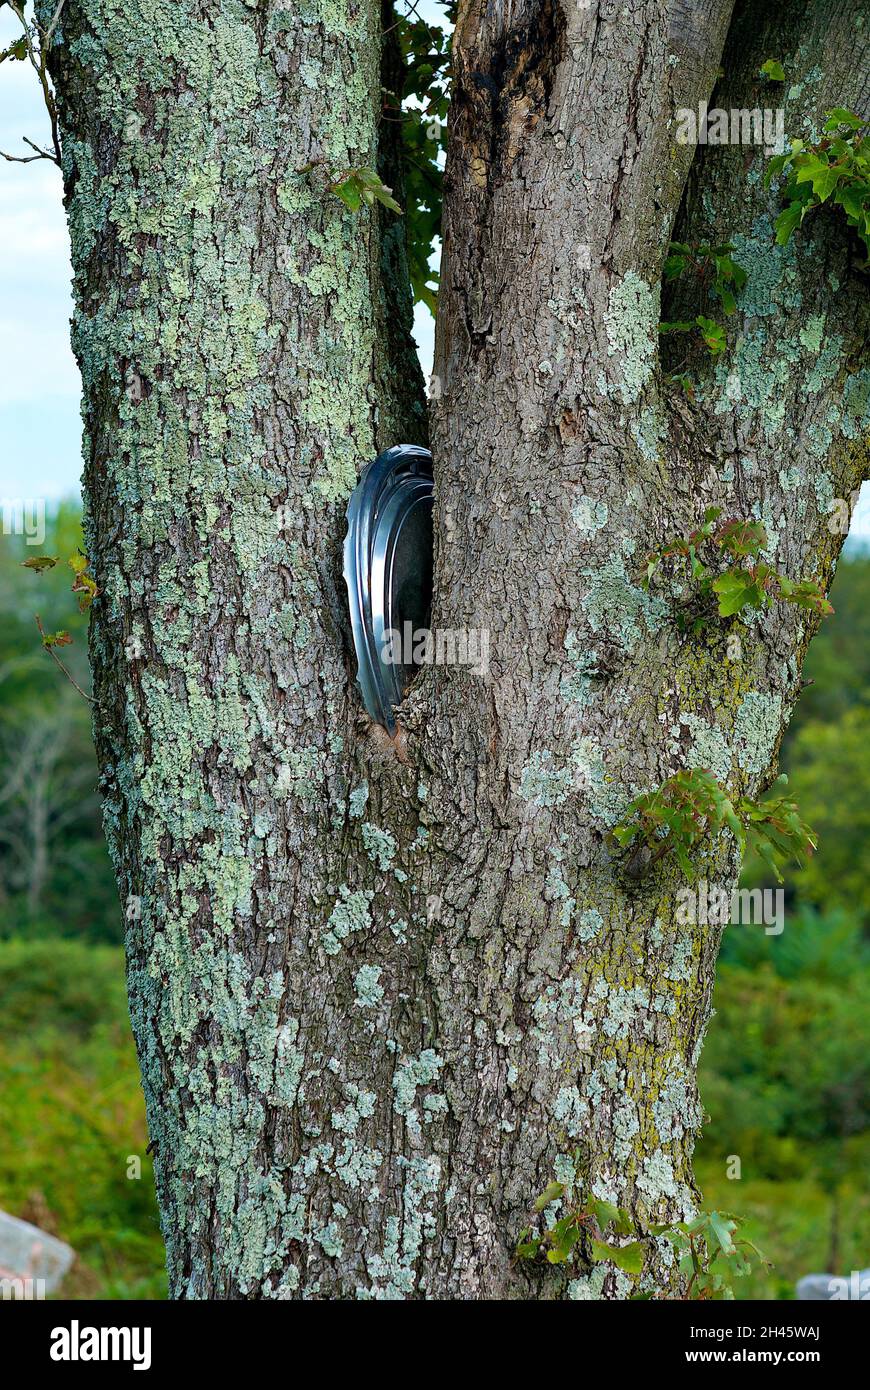 Die Metallkappe eines alten Autoreifens ist in die Gabel eines reifen Baumes eingebettet, der um ihn herum aufgewachsen ist. Stockfoto